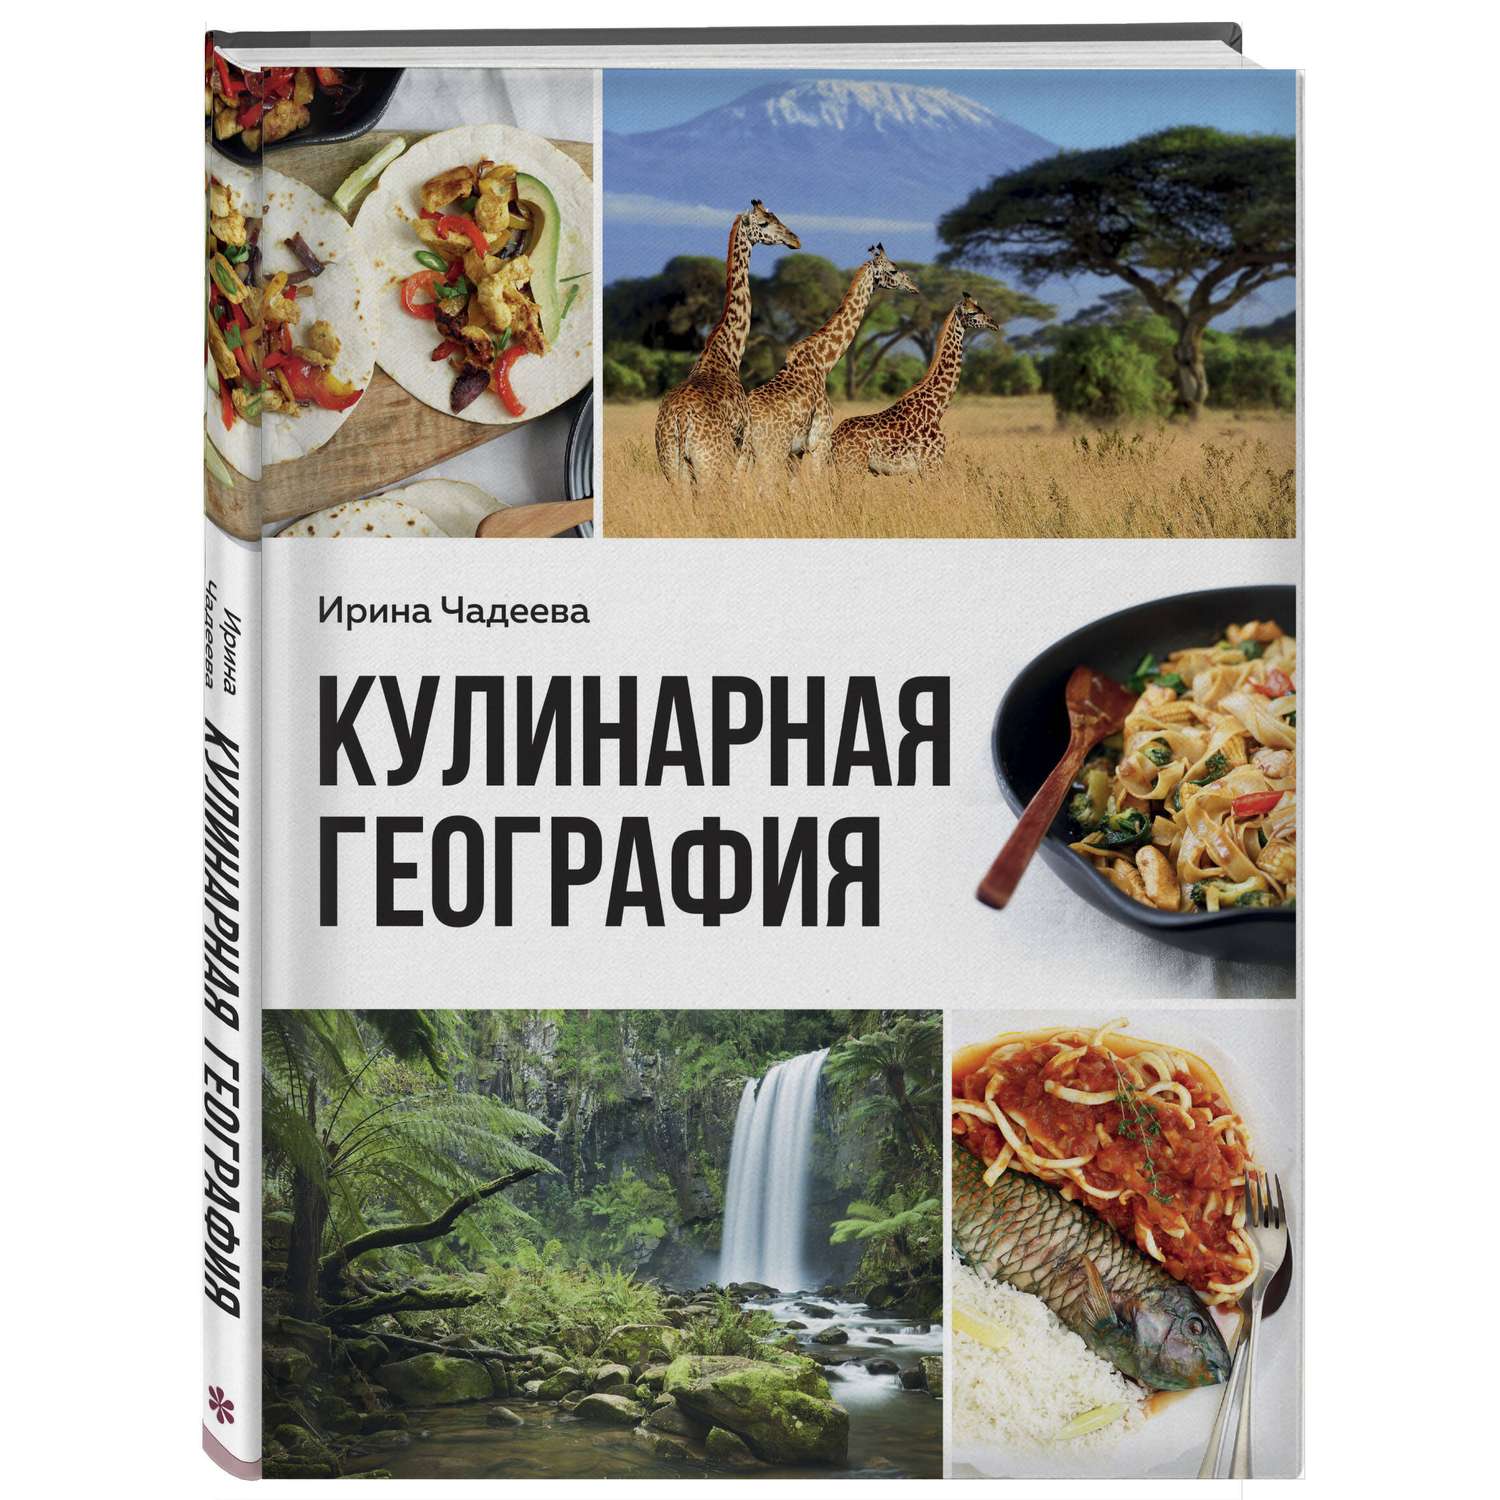 Книга Эксмо Кулинарная география 90 лучших семейных ужинов со всех концов света - фото 1